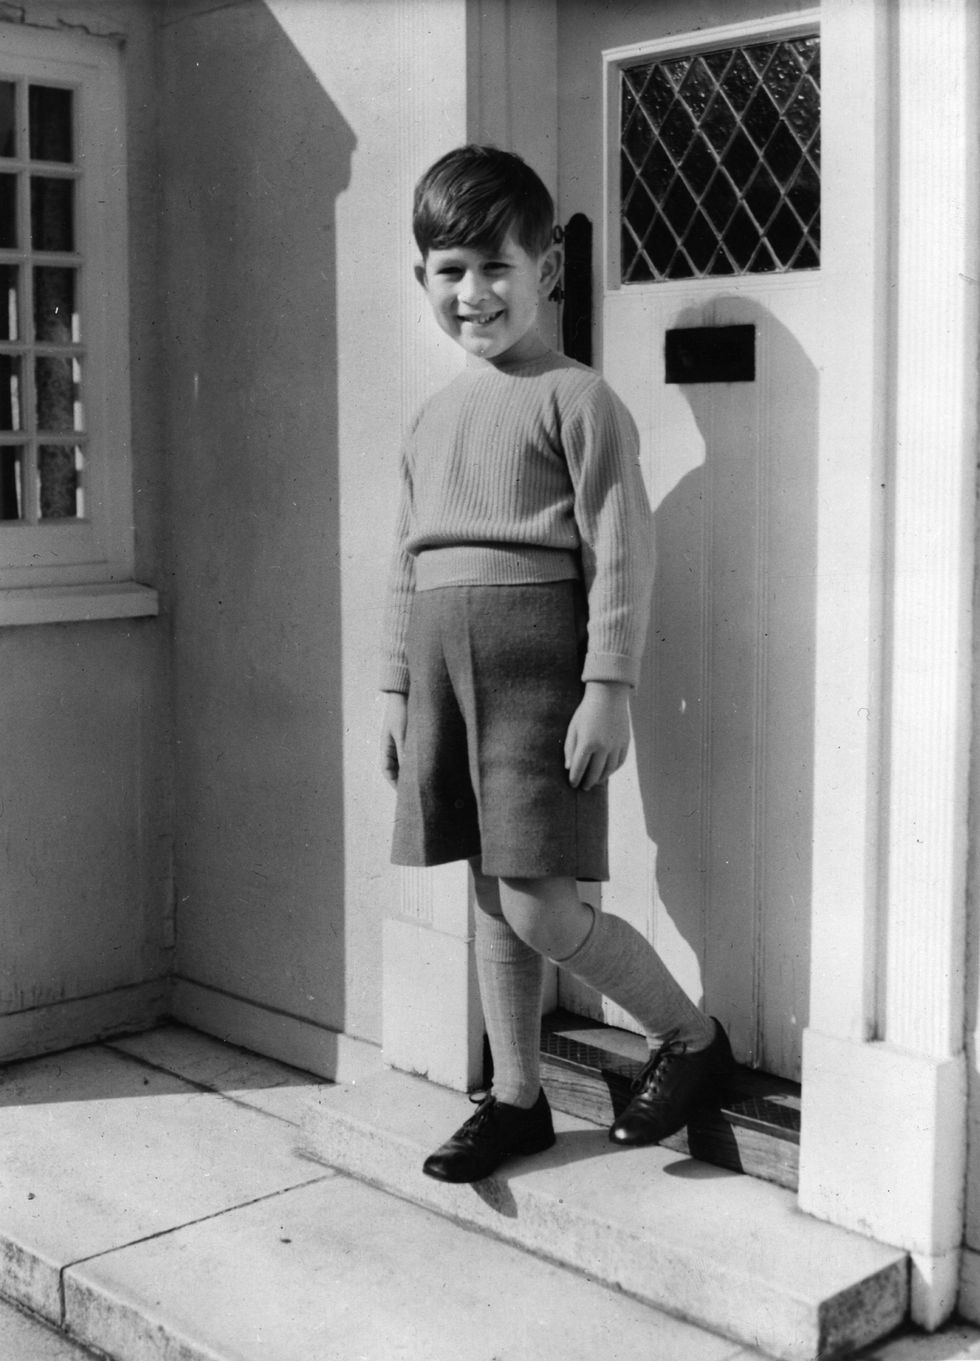 el príncipe carlos de pequeño en la puerta de una casa en ua foto en blanco y negro